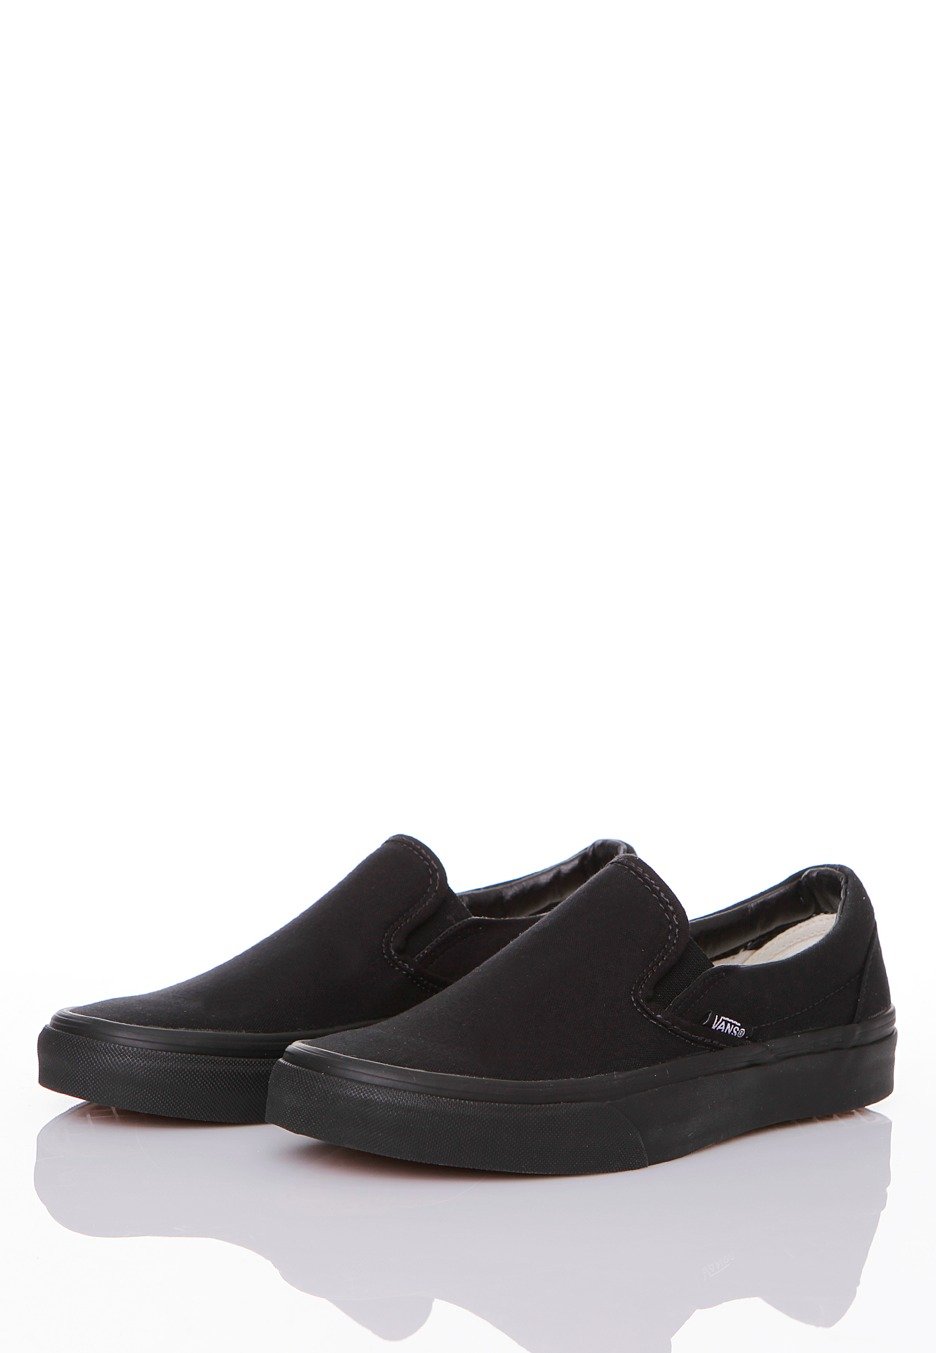 Vans - Classic Slip-On Black/Black - Girl Shoes